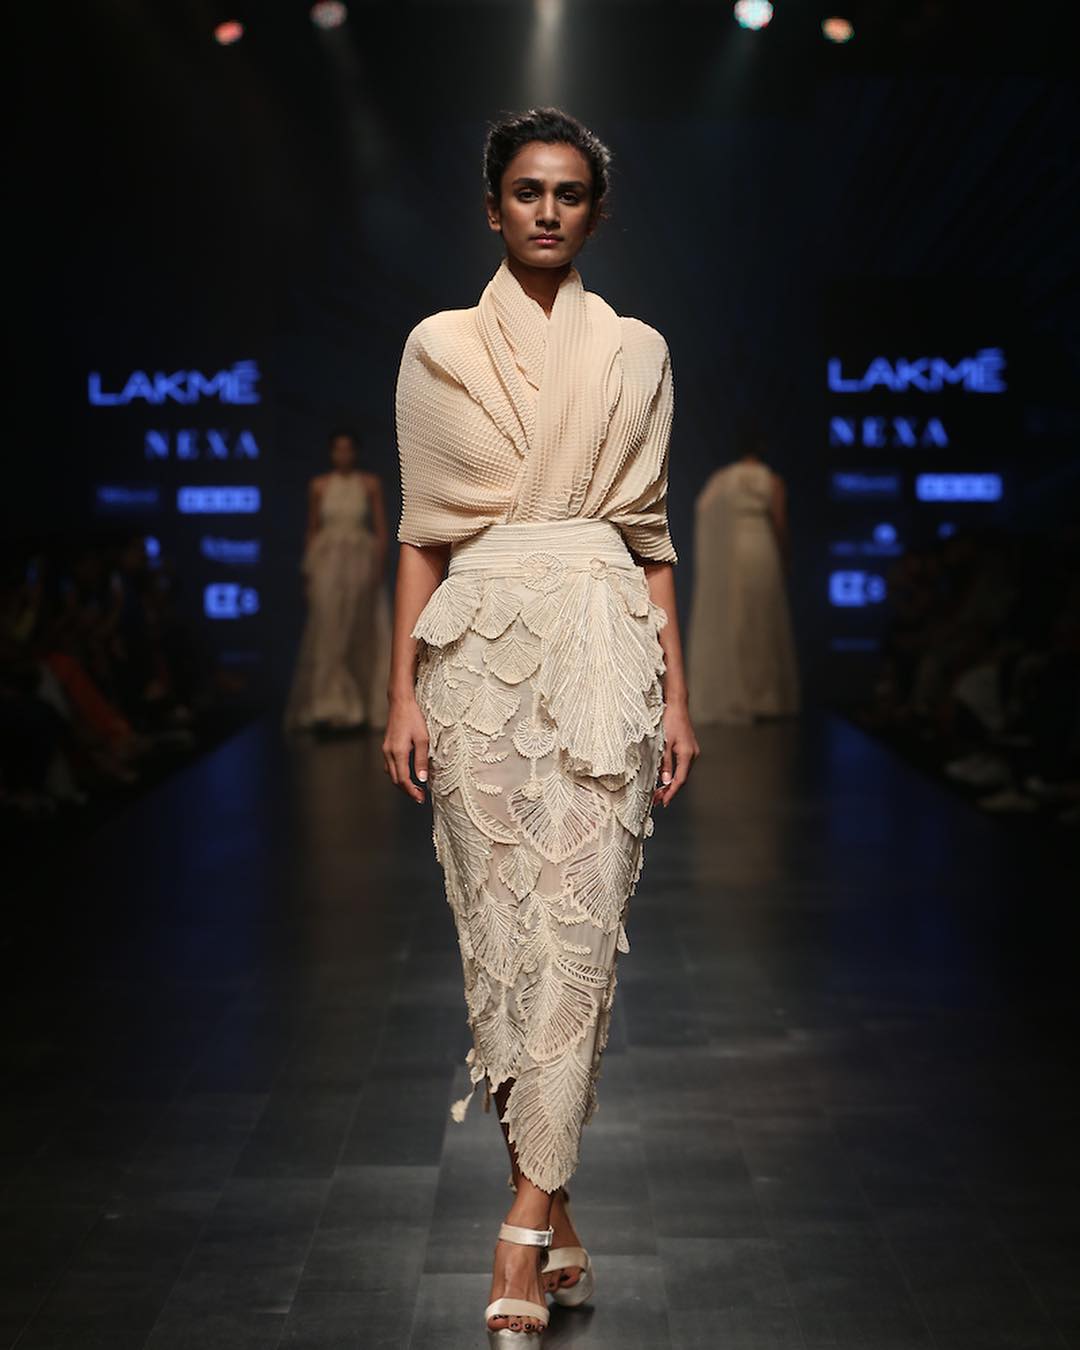 Lakme Fashion Week 2019